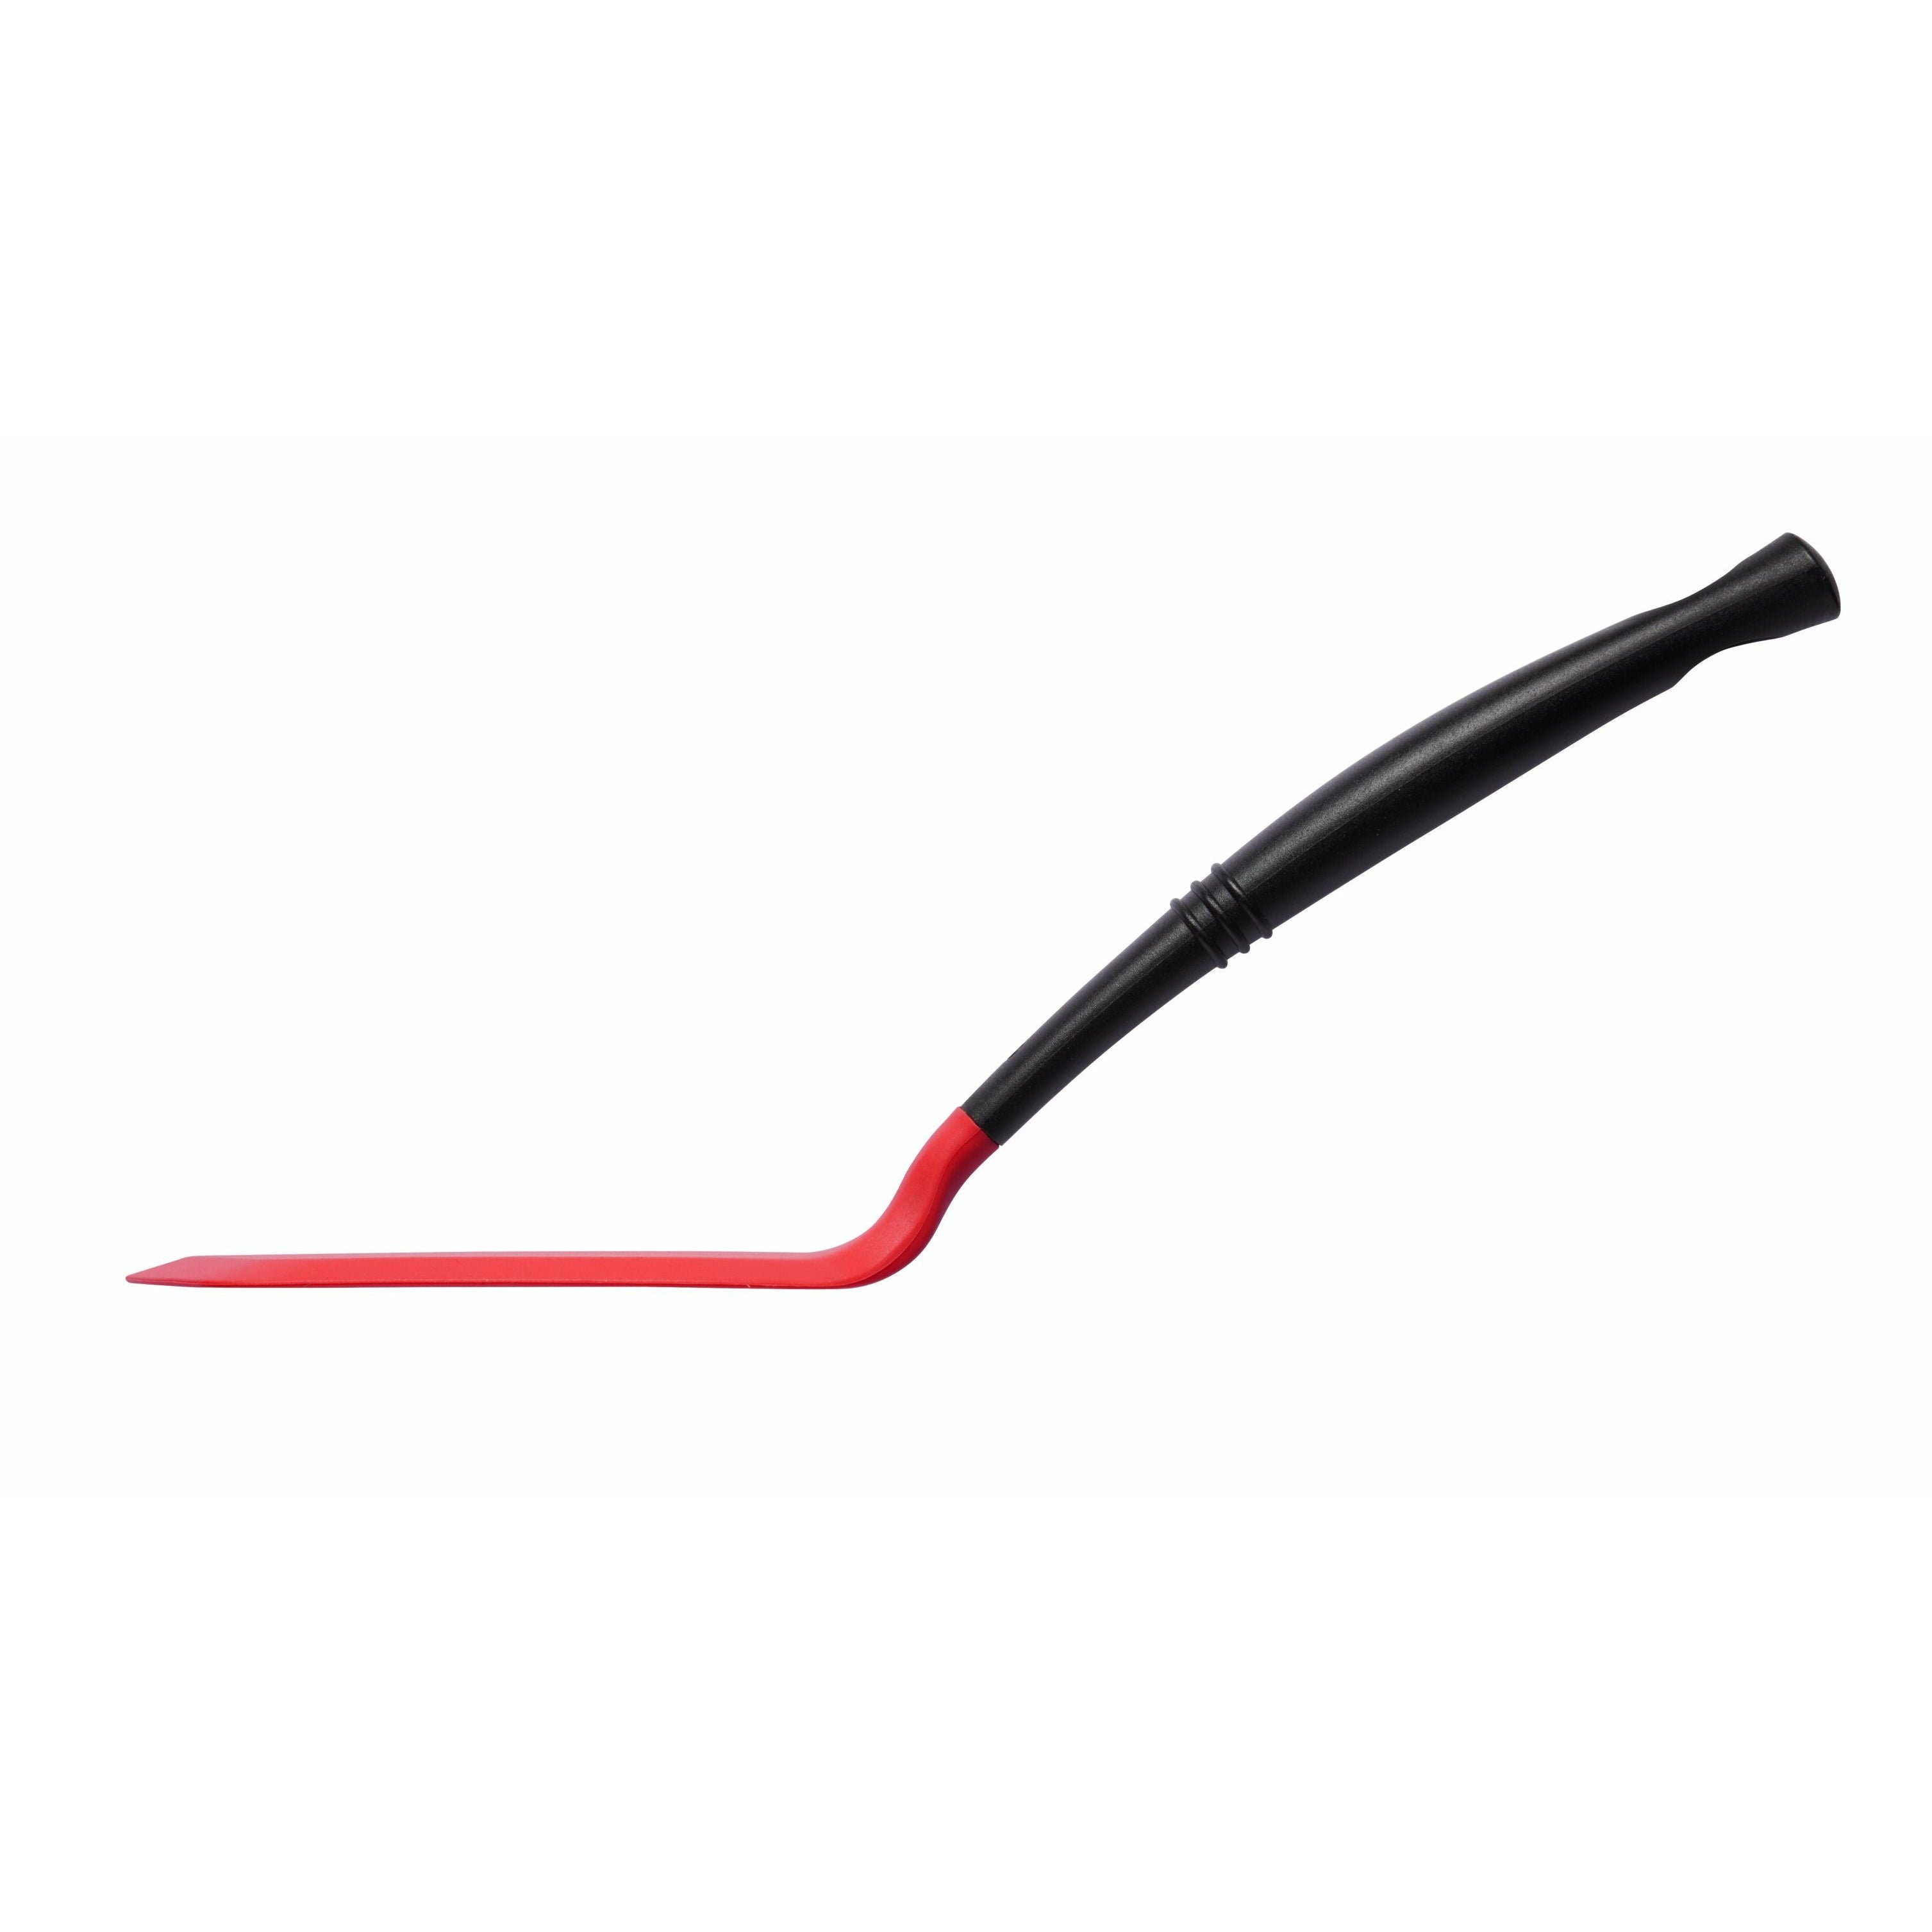 Le Creuset Edge premium de spatule étroite, rouge cerise